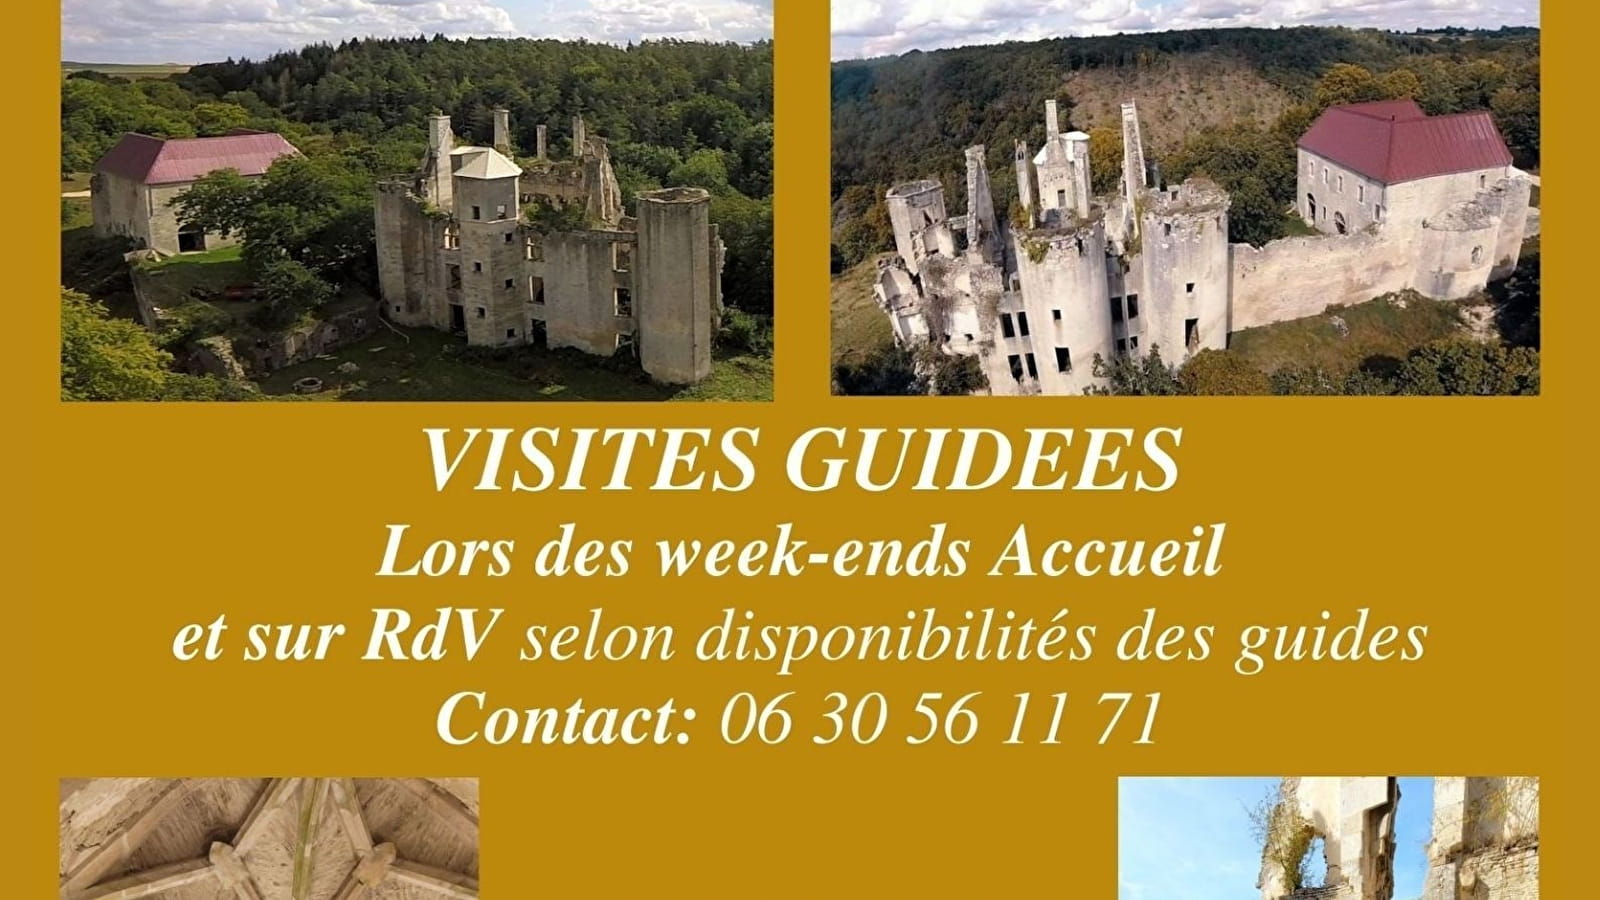 Bezoek aan Château de Rochefort het hele jaar door op afspraak